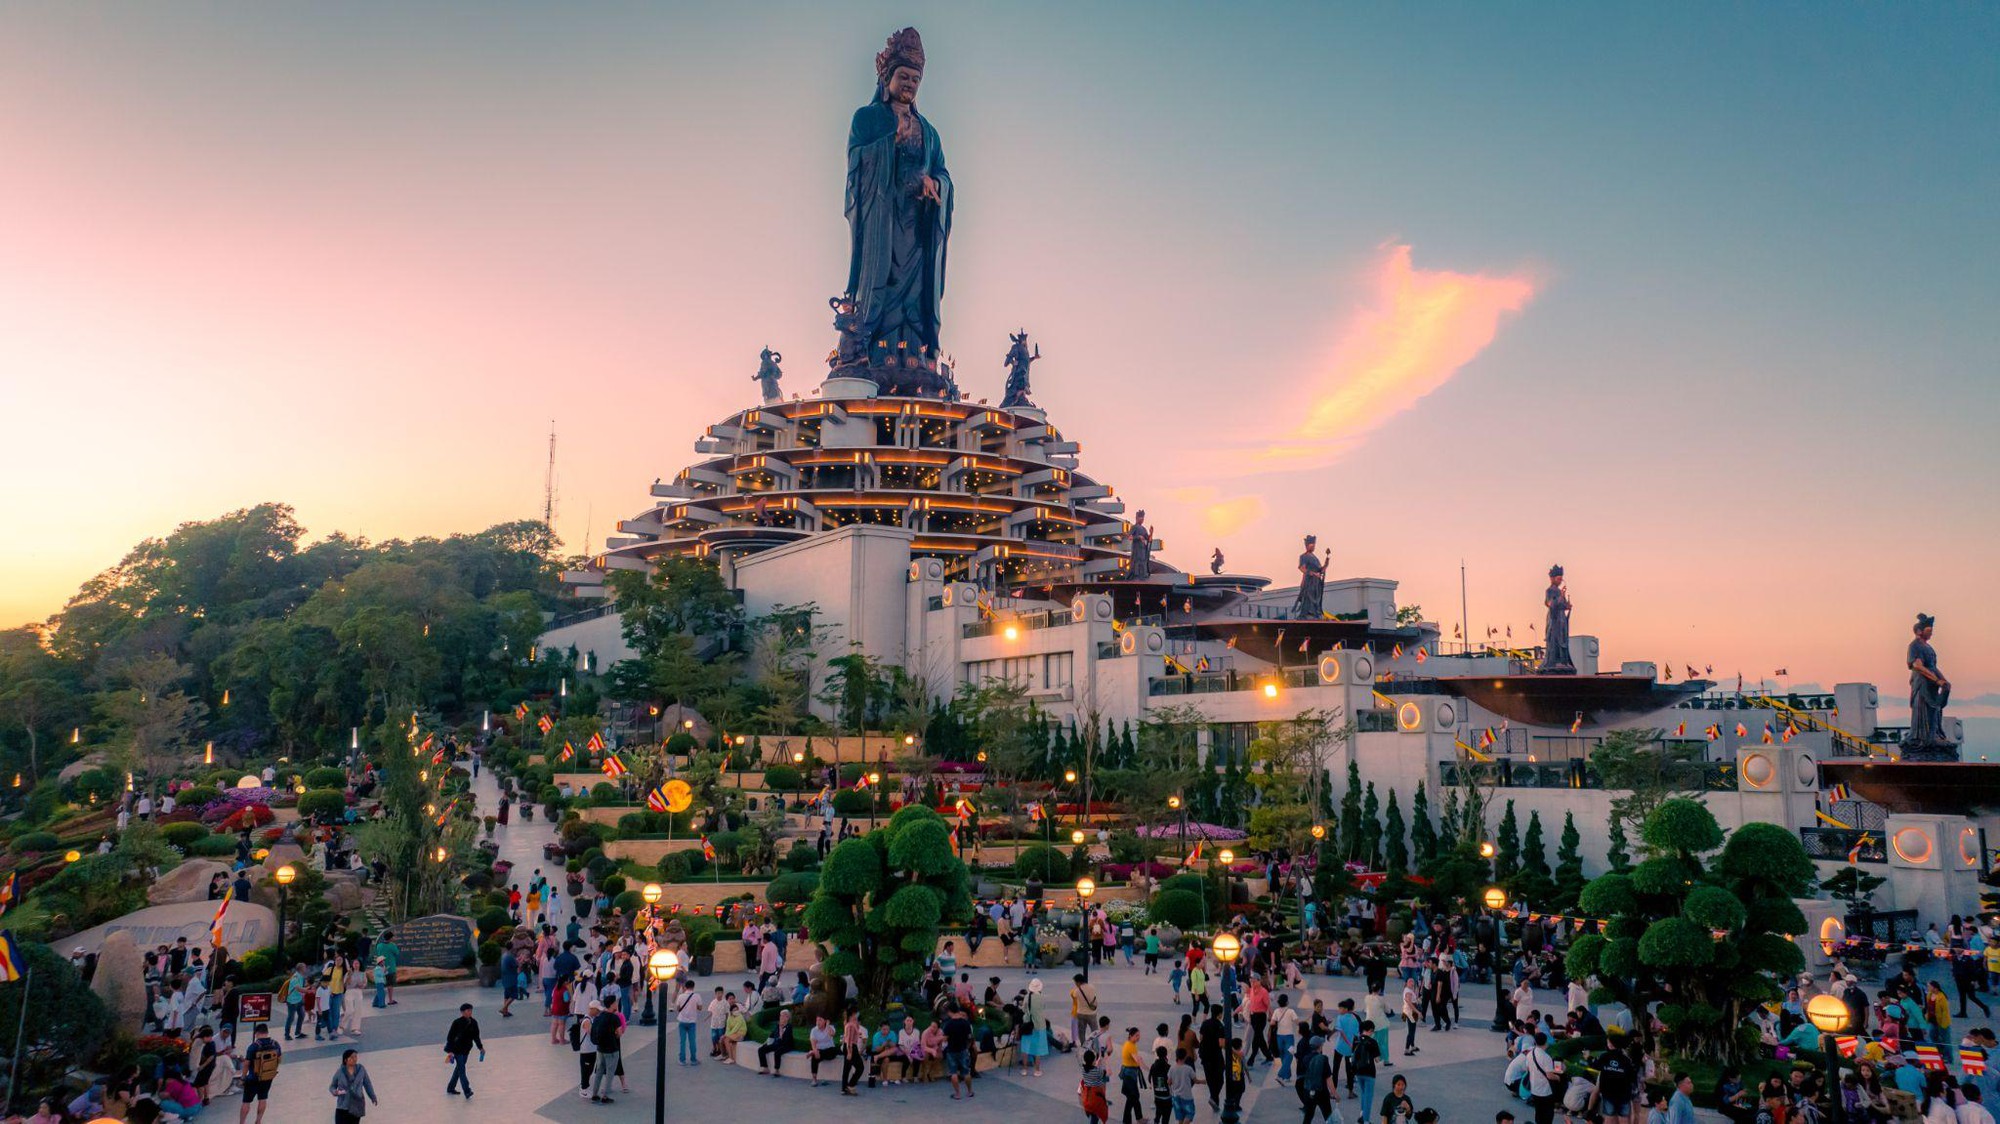 Những khoảnh khắc thiêng liêng trong mùa lễ tạ cuối năm tại núi Bà Đen, Tây Ninh- Ảnh 11.